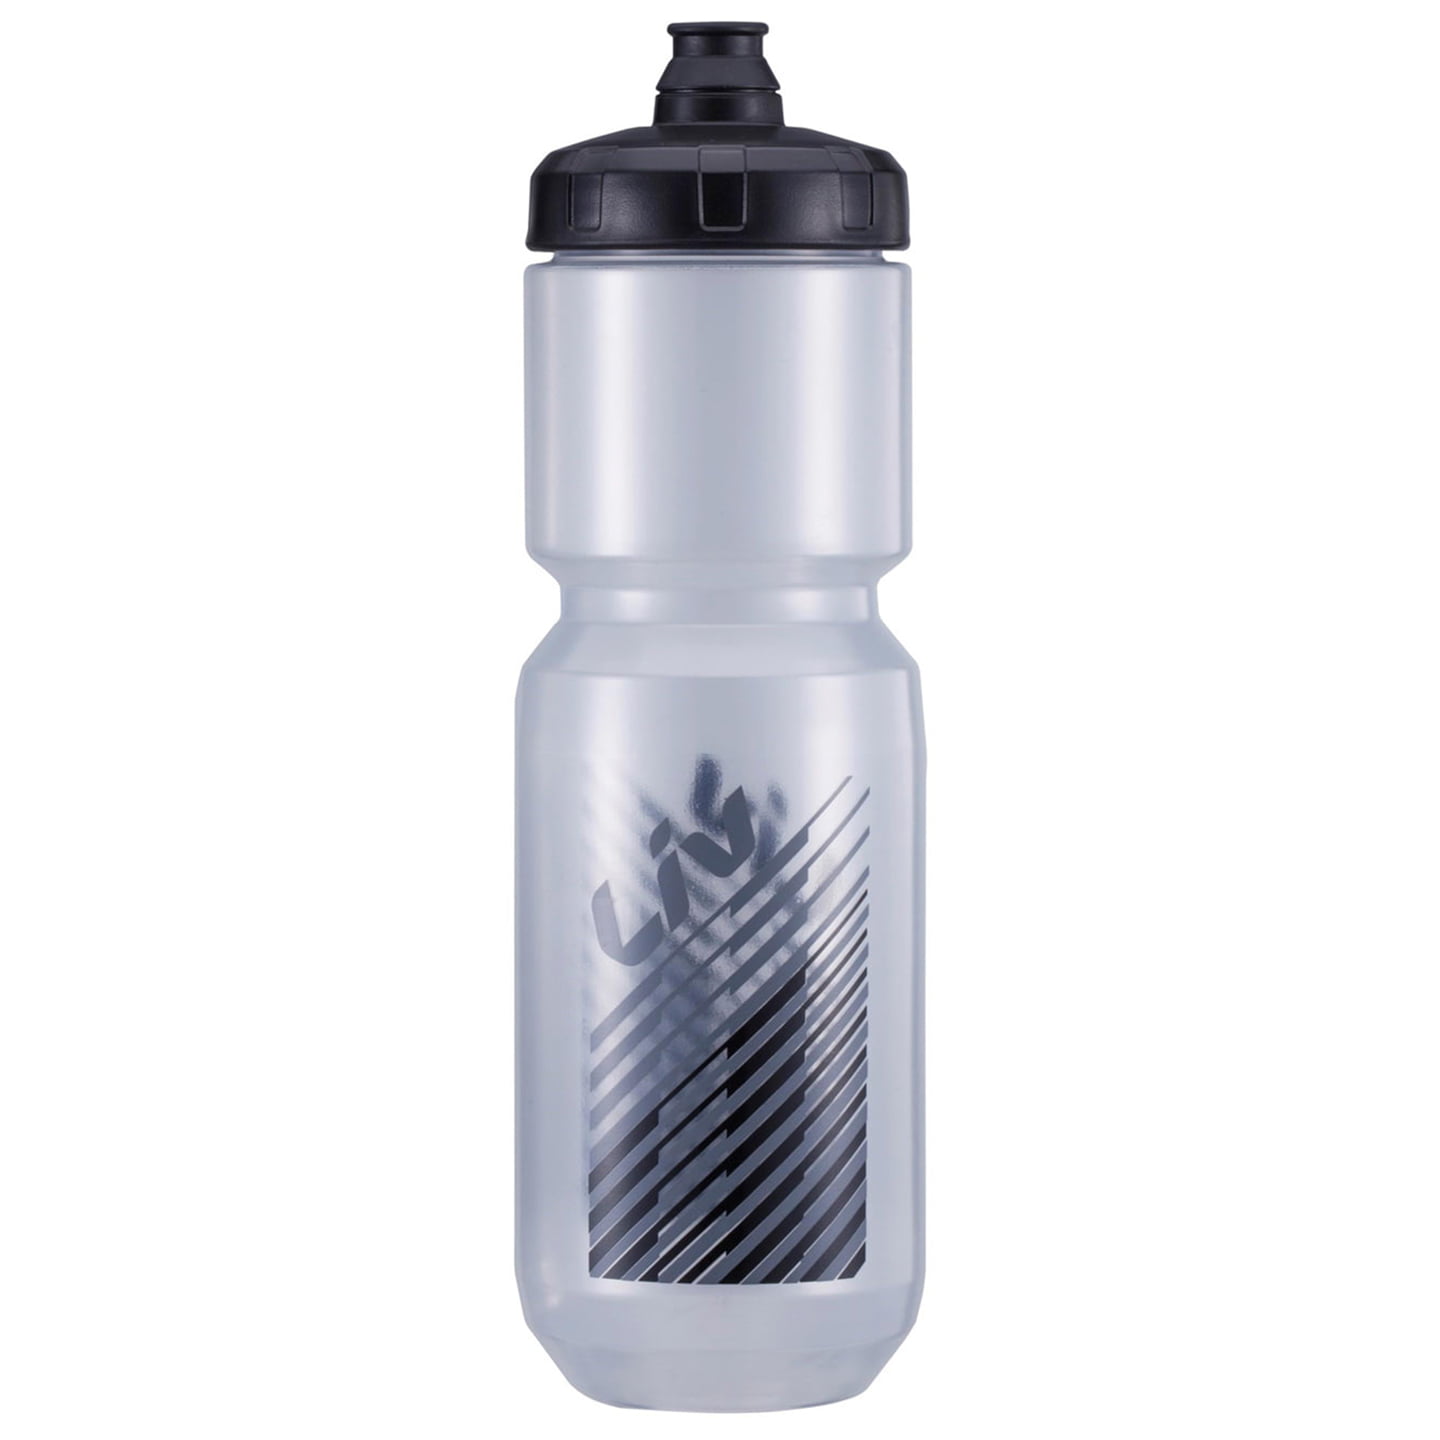 LIV Doublespring 750 ml Water Bottle Water Bottle, Bike bottle, Bike accessories